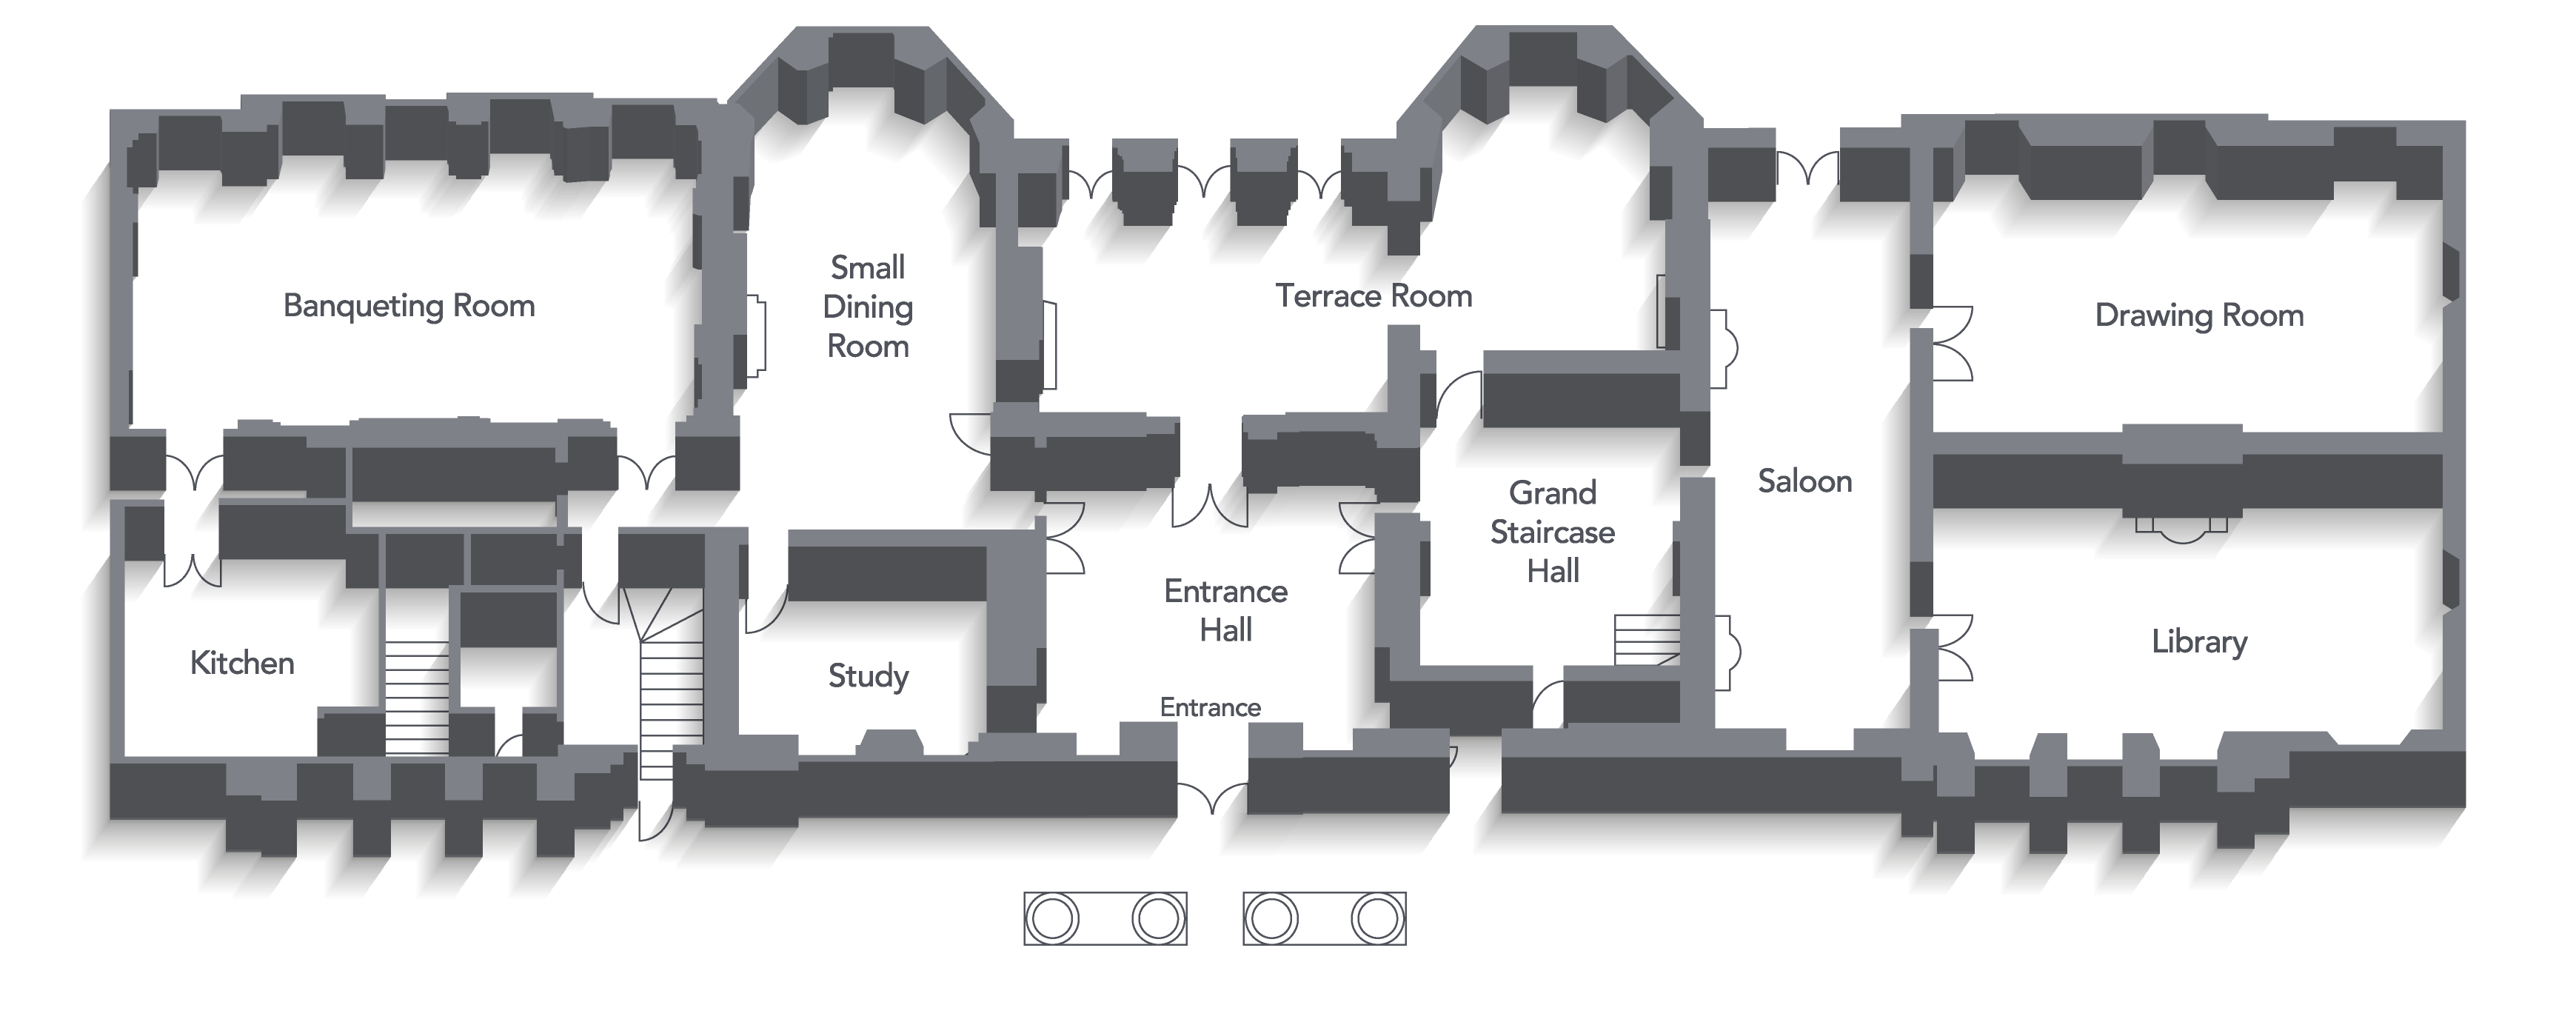 Floor plan of the ground floor of Hylands House